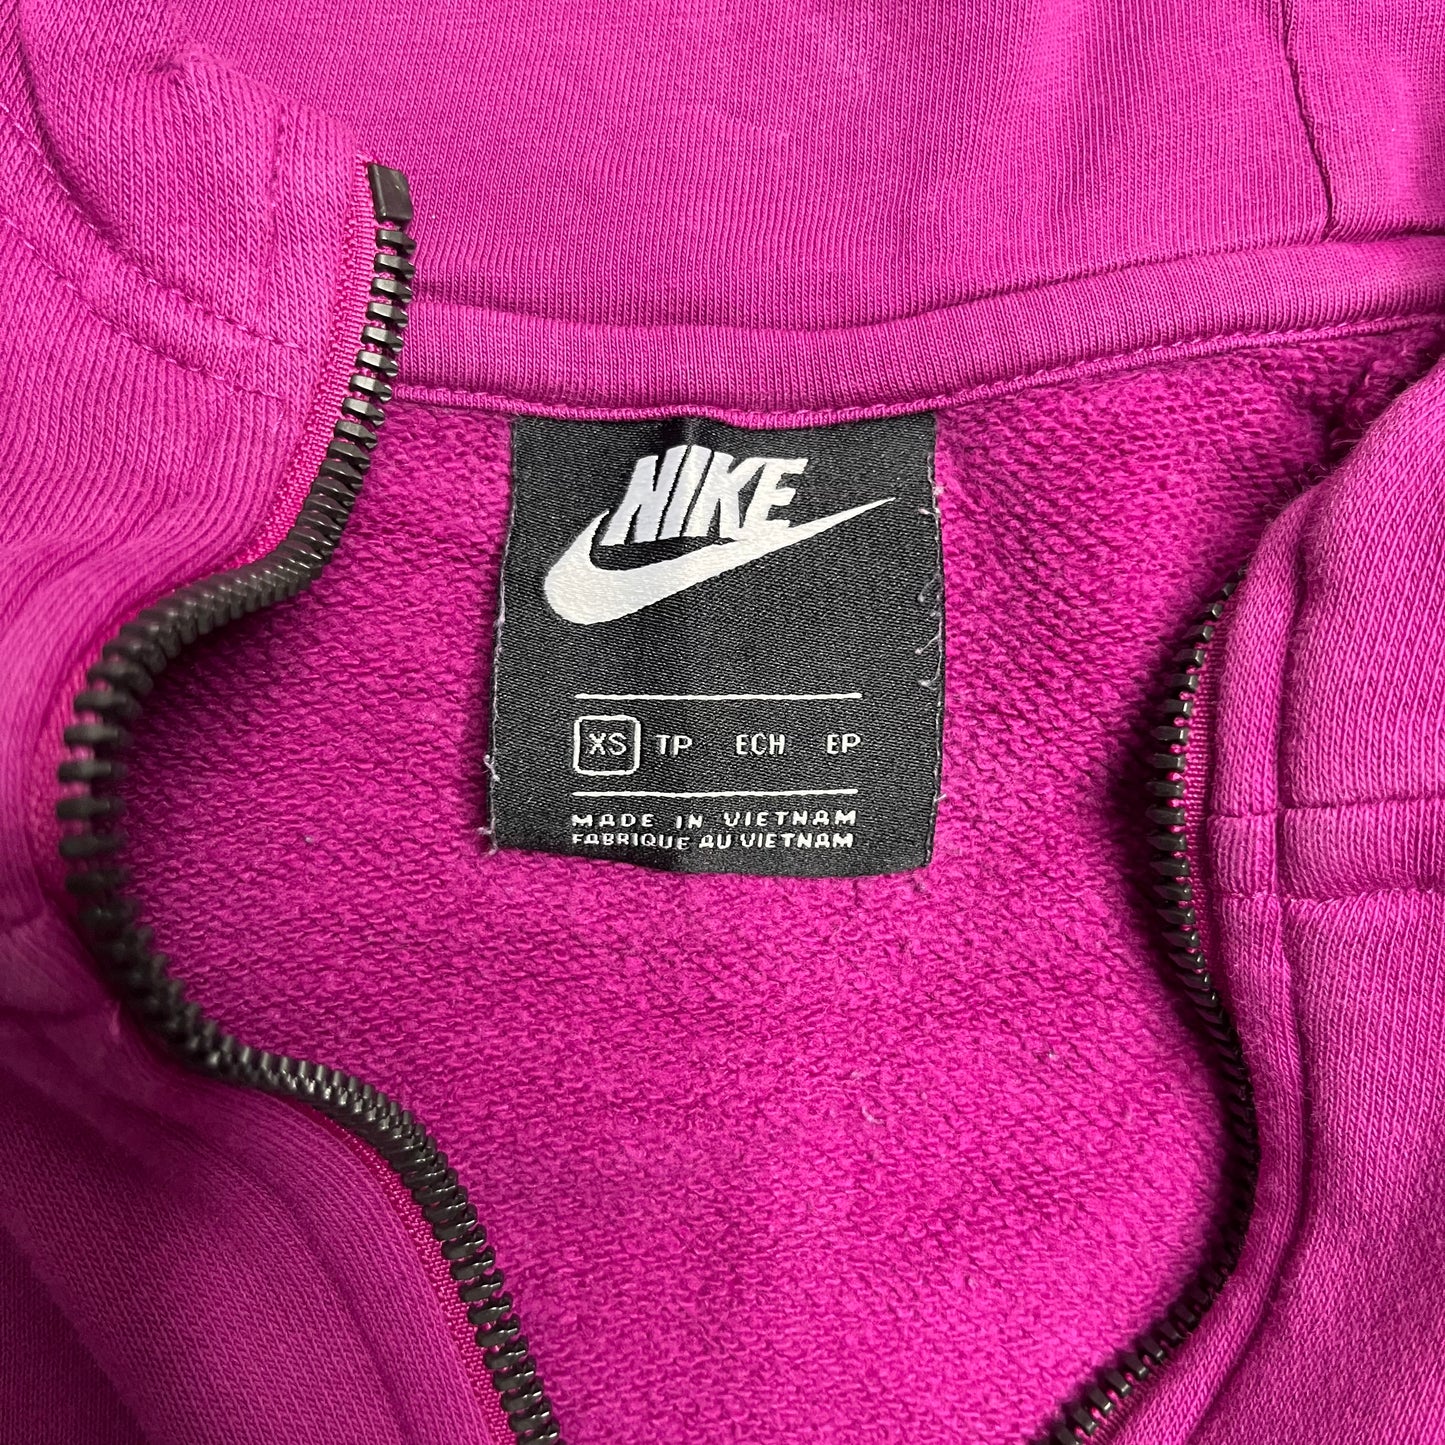 Pink Quarter Zip Nike Jacket (XS)